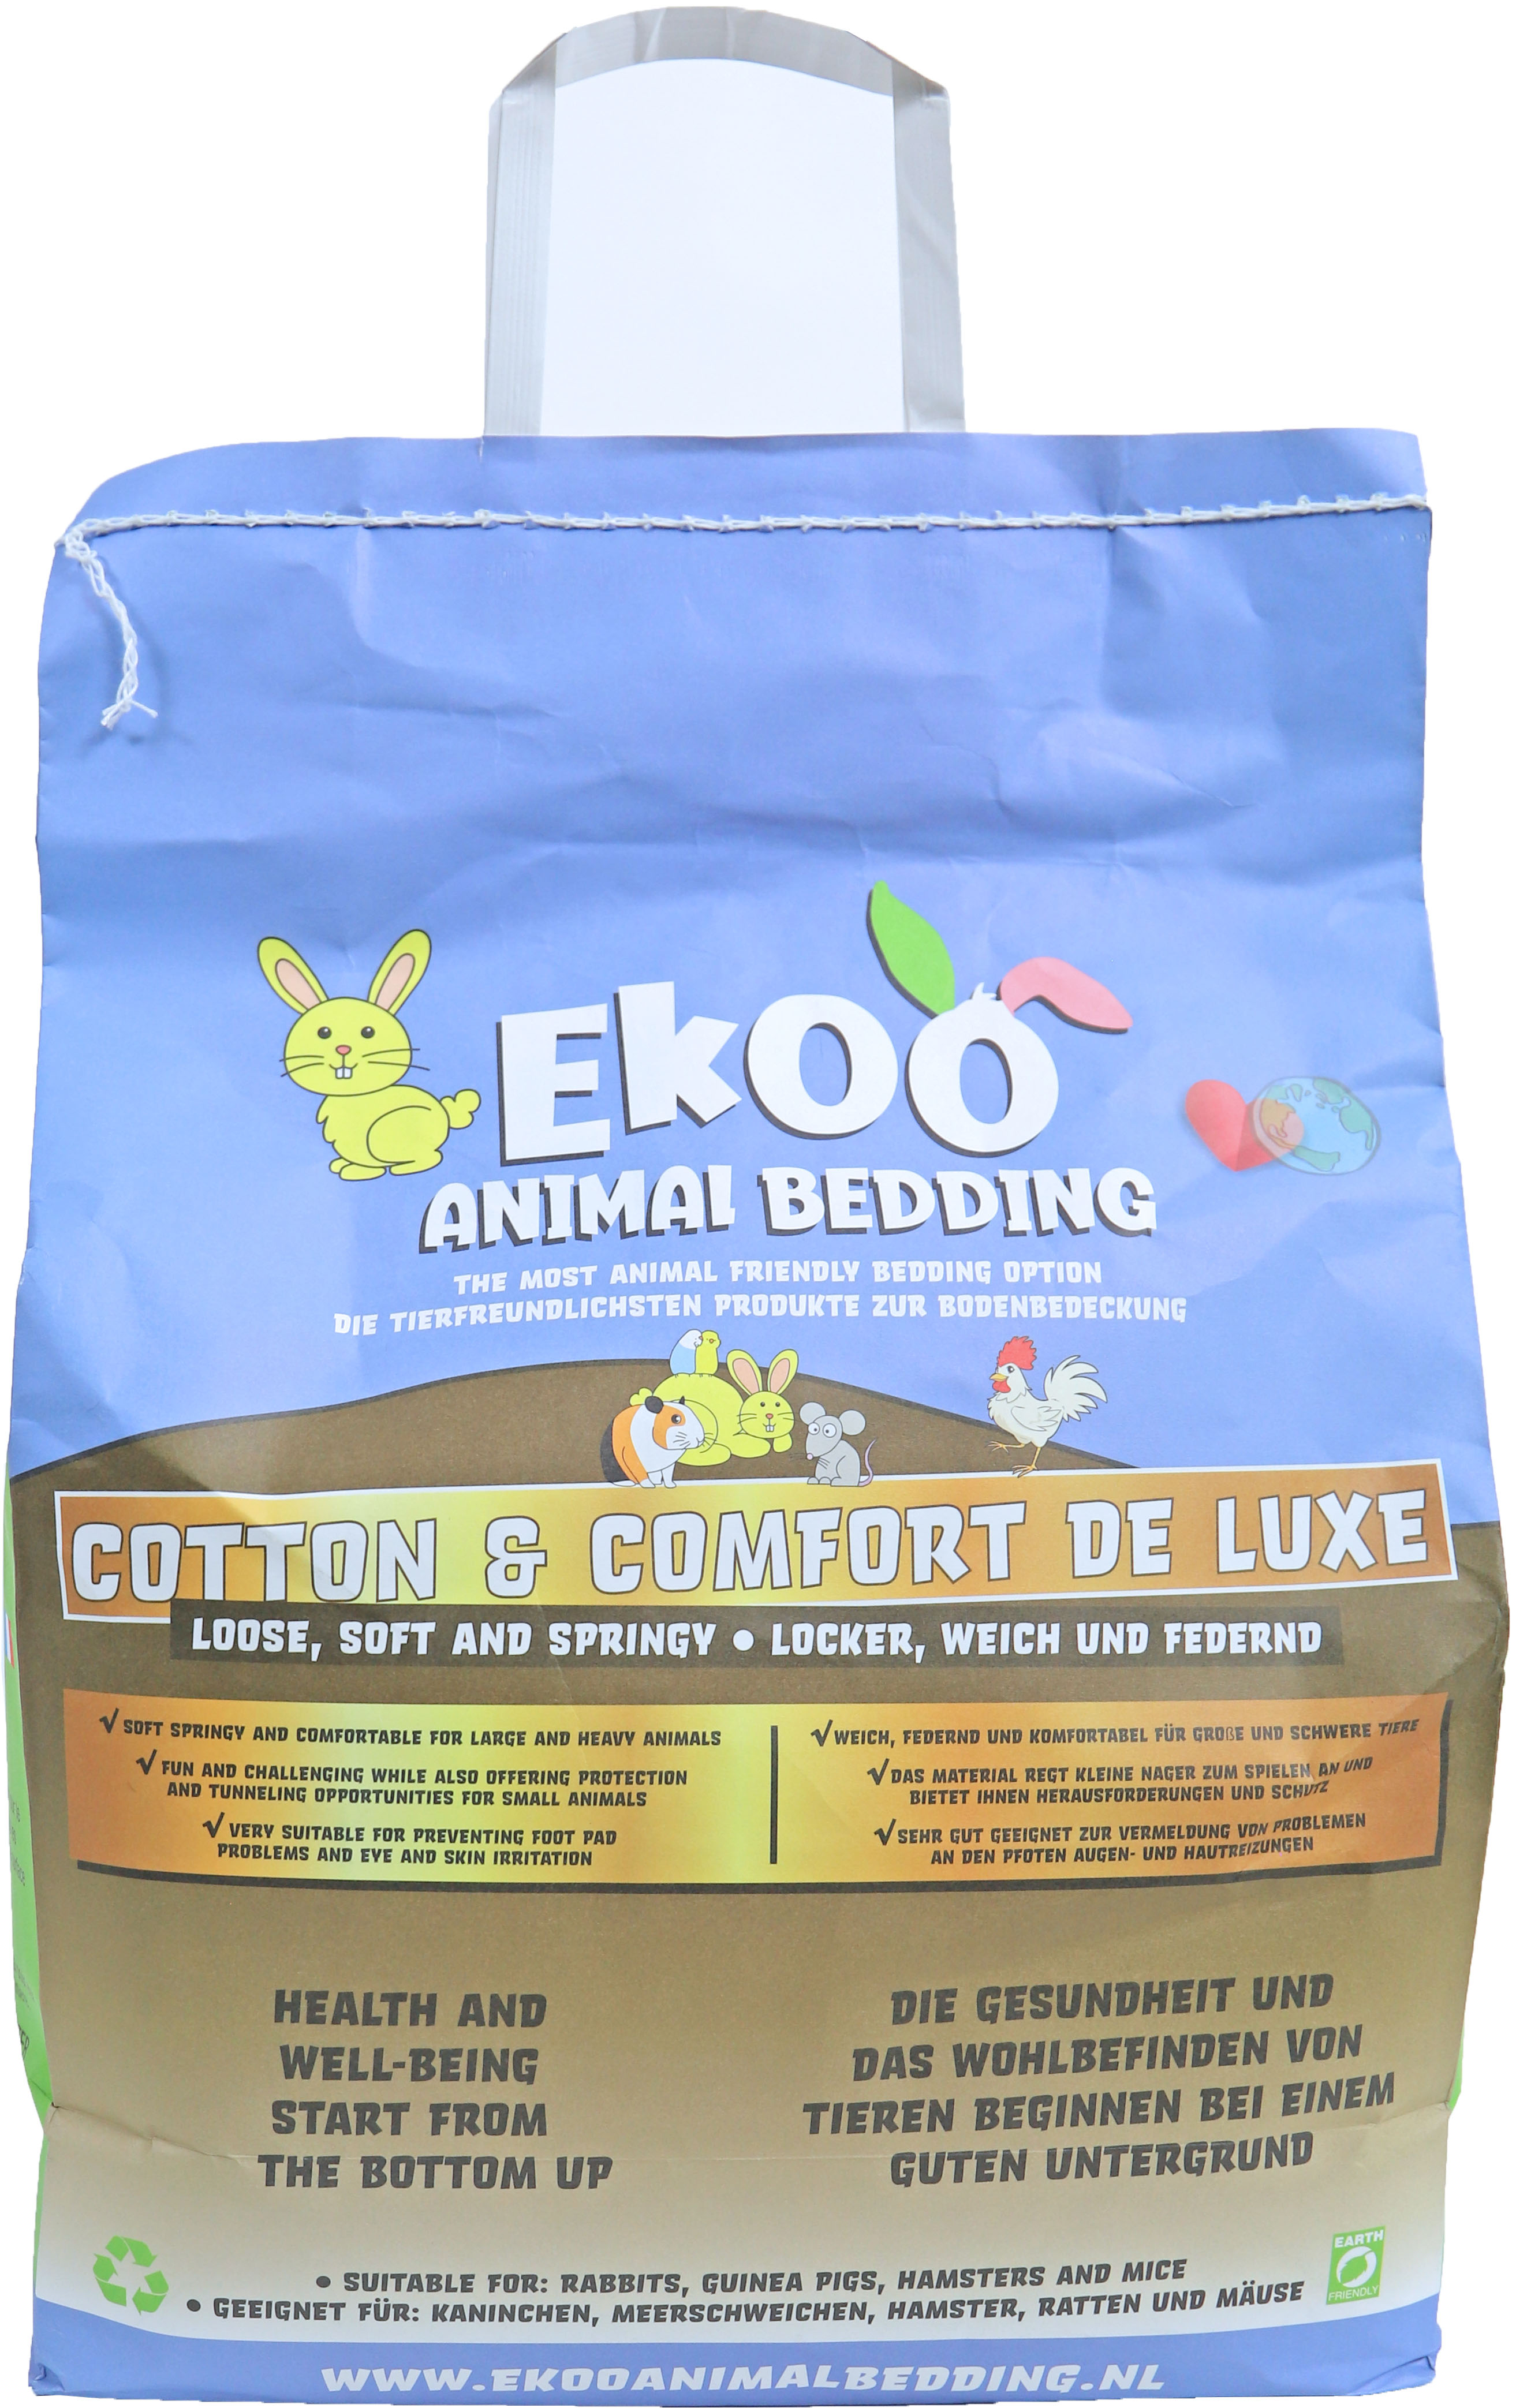 Ekoo bodembedekker Animalbedding cotton & comfort luxe